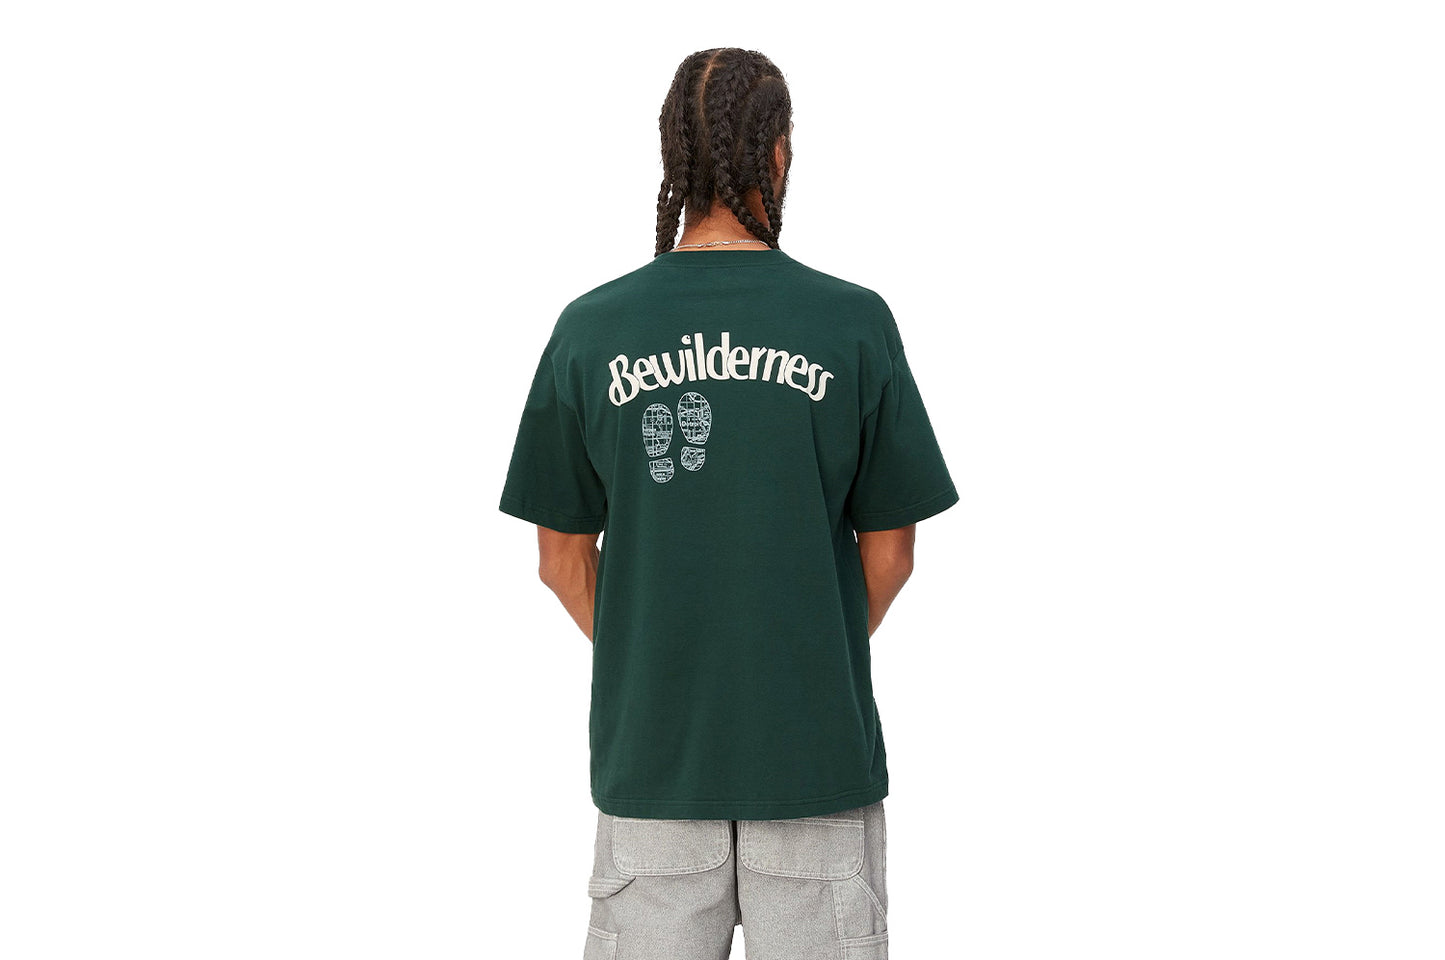 S/S Bewilderness T-Shirt